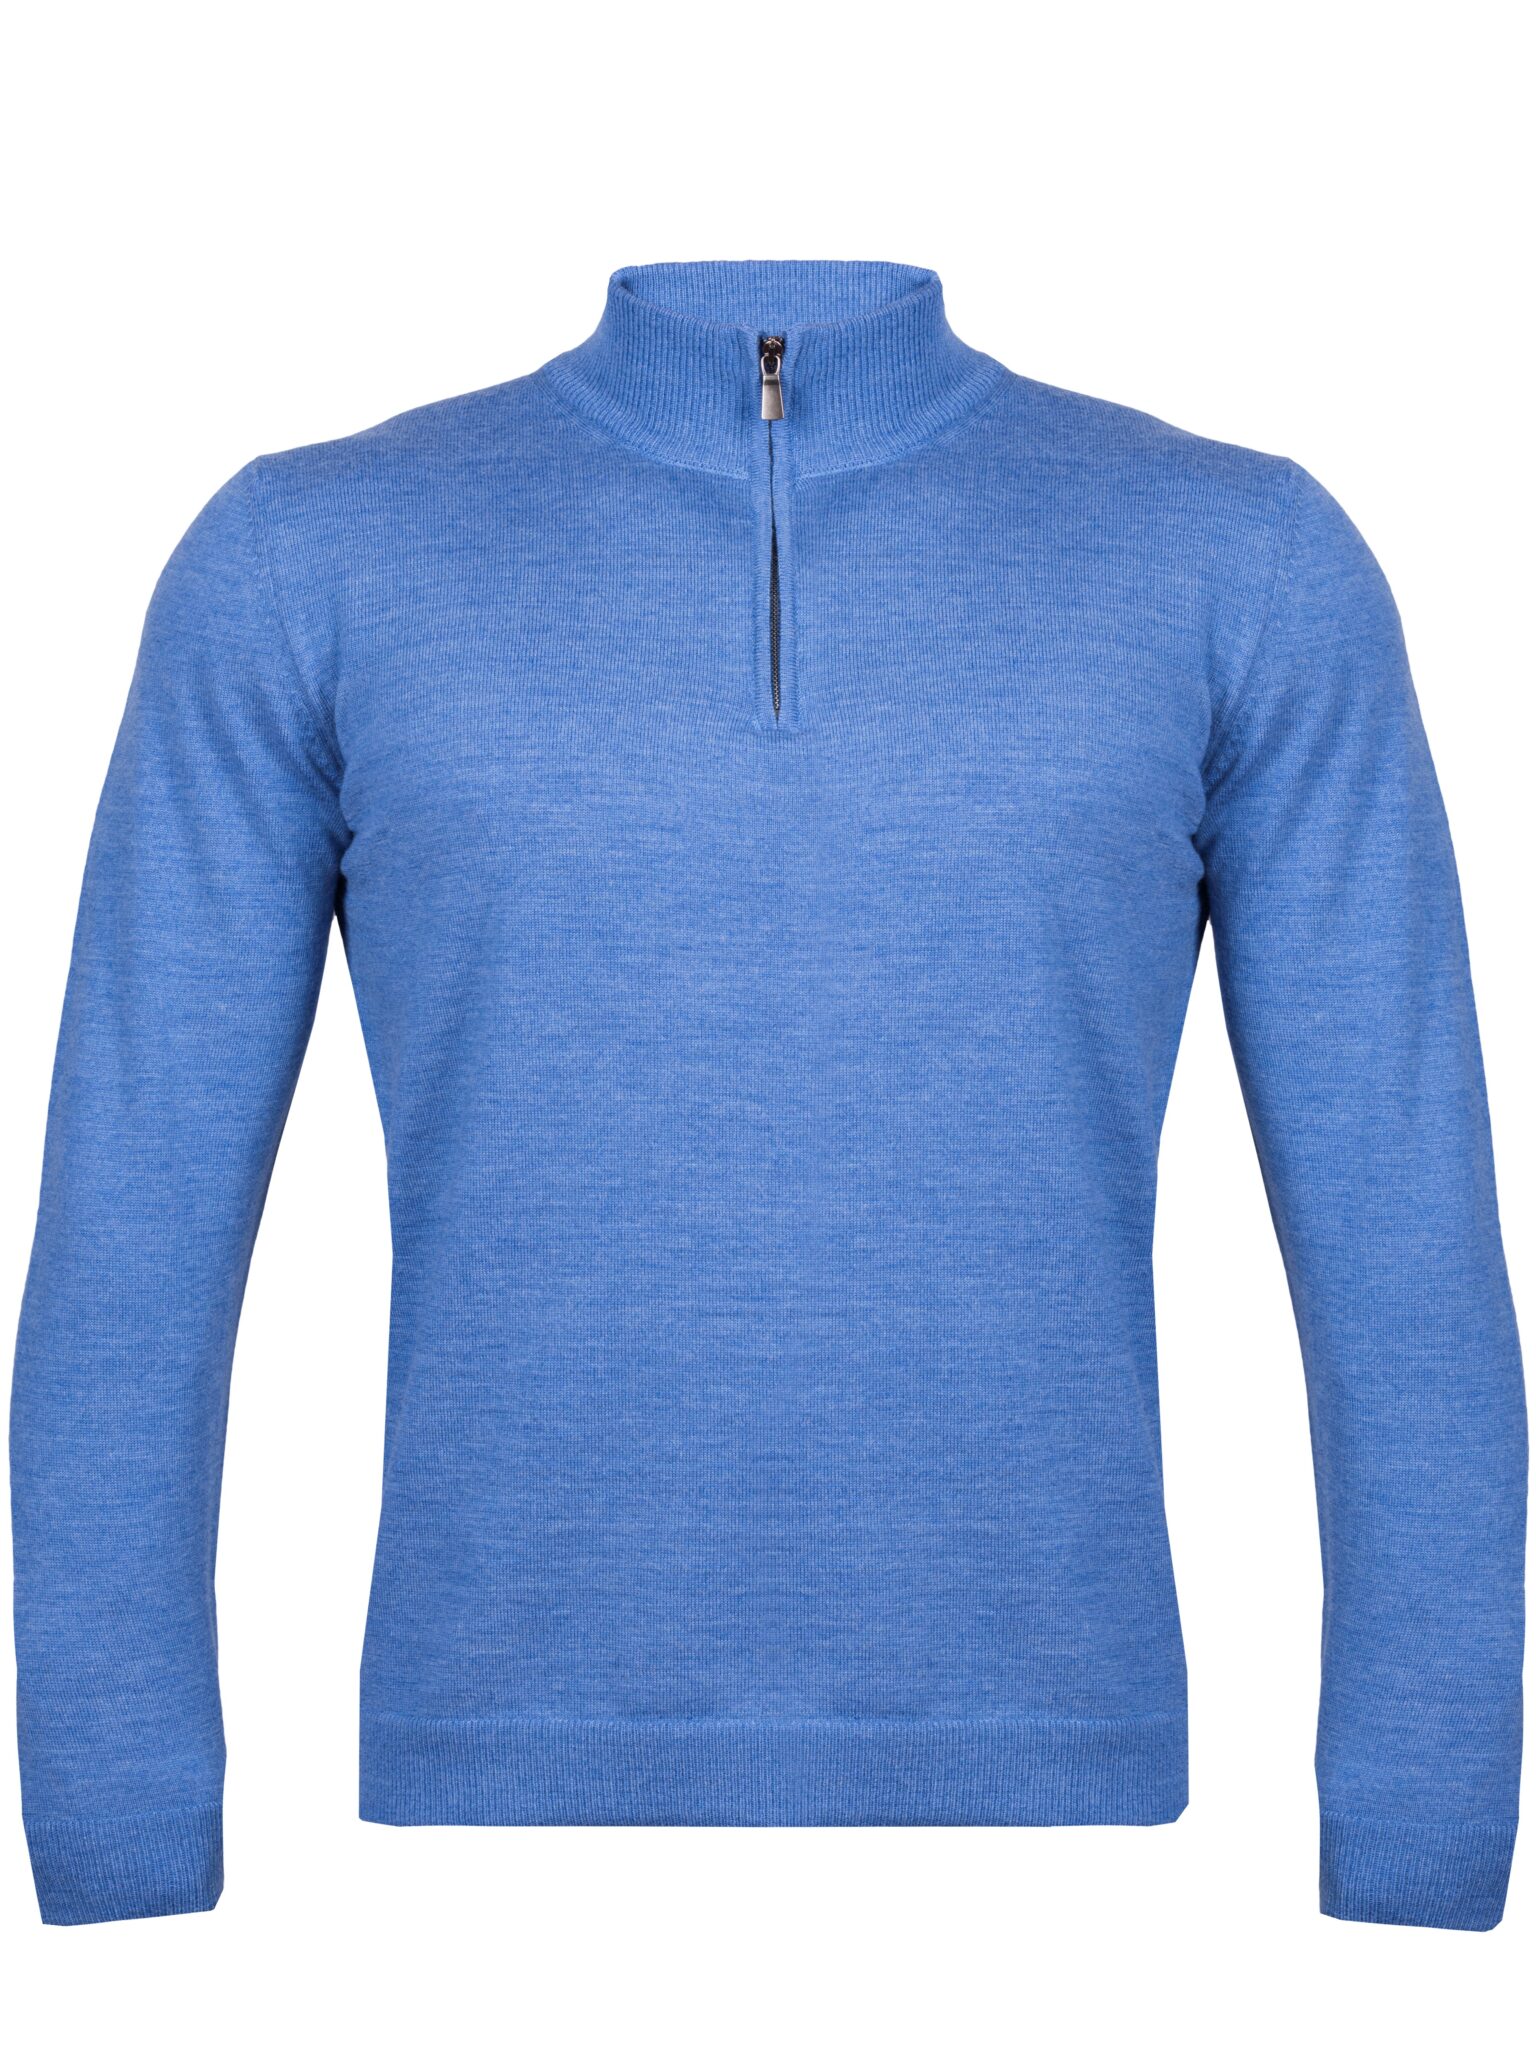 Knittons Men's 1/4 Zip Sweater Blue